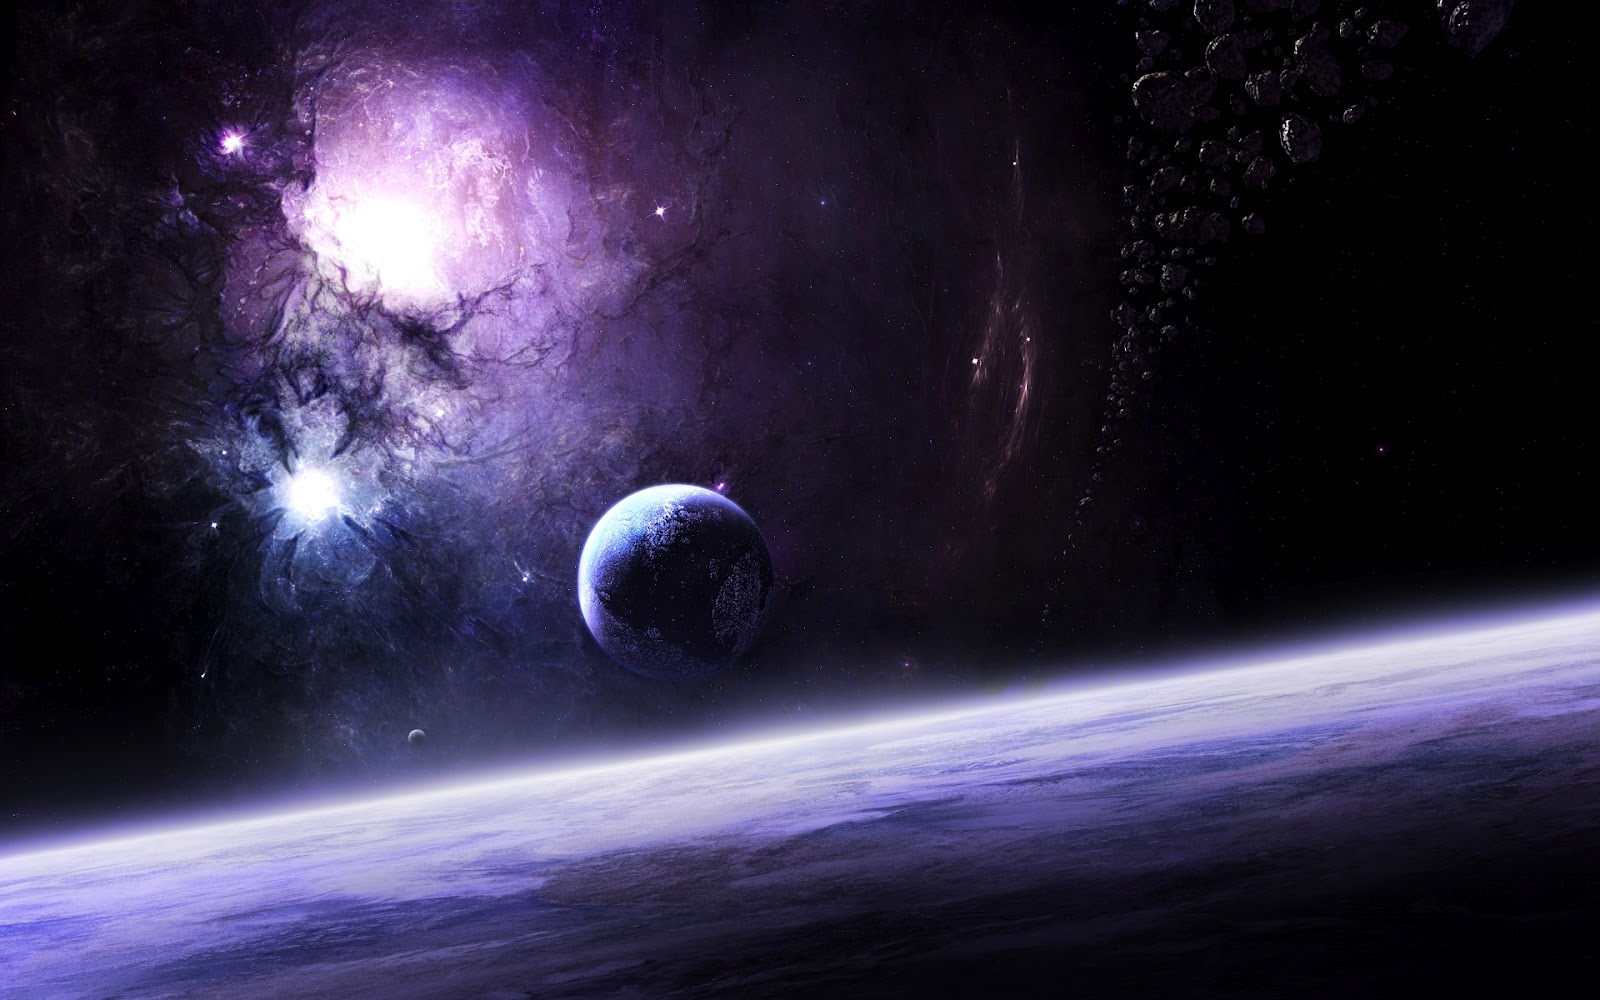 sfondi spaziali ad alta definizione,spazio,atmosfera,pianeta,oggetto astronomico,universo